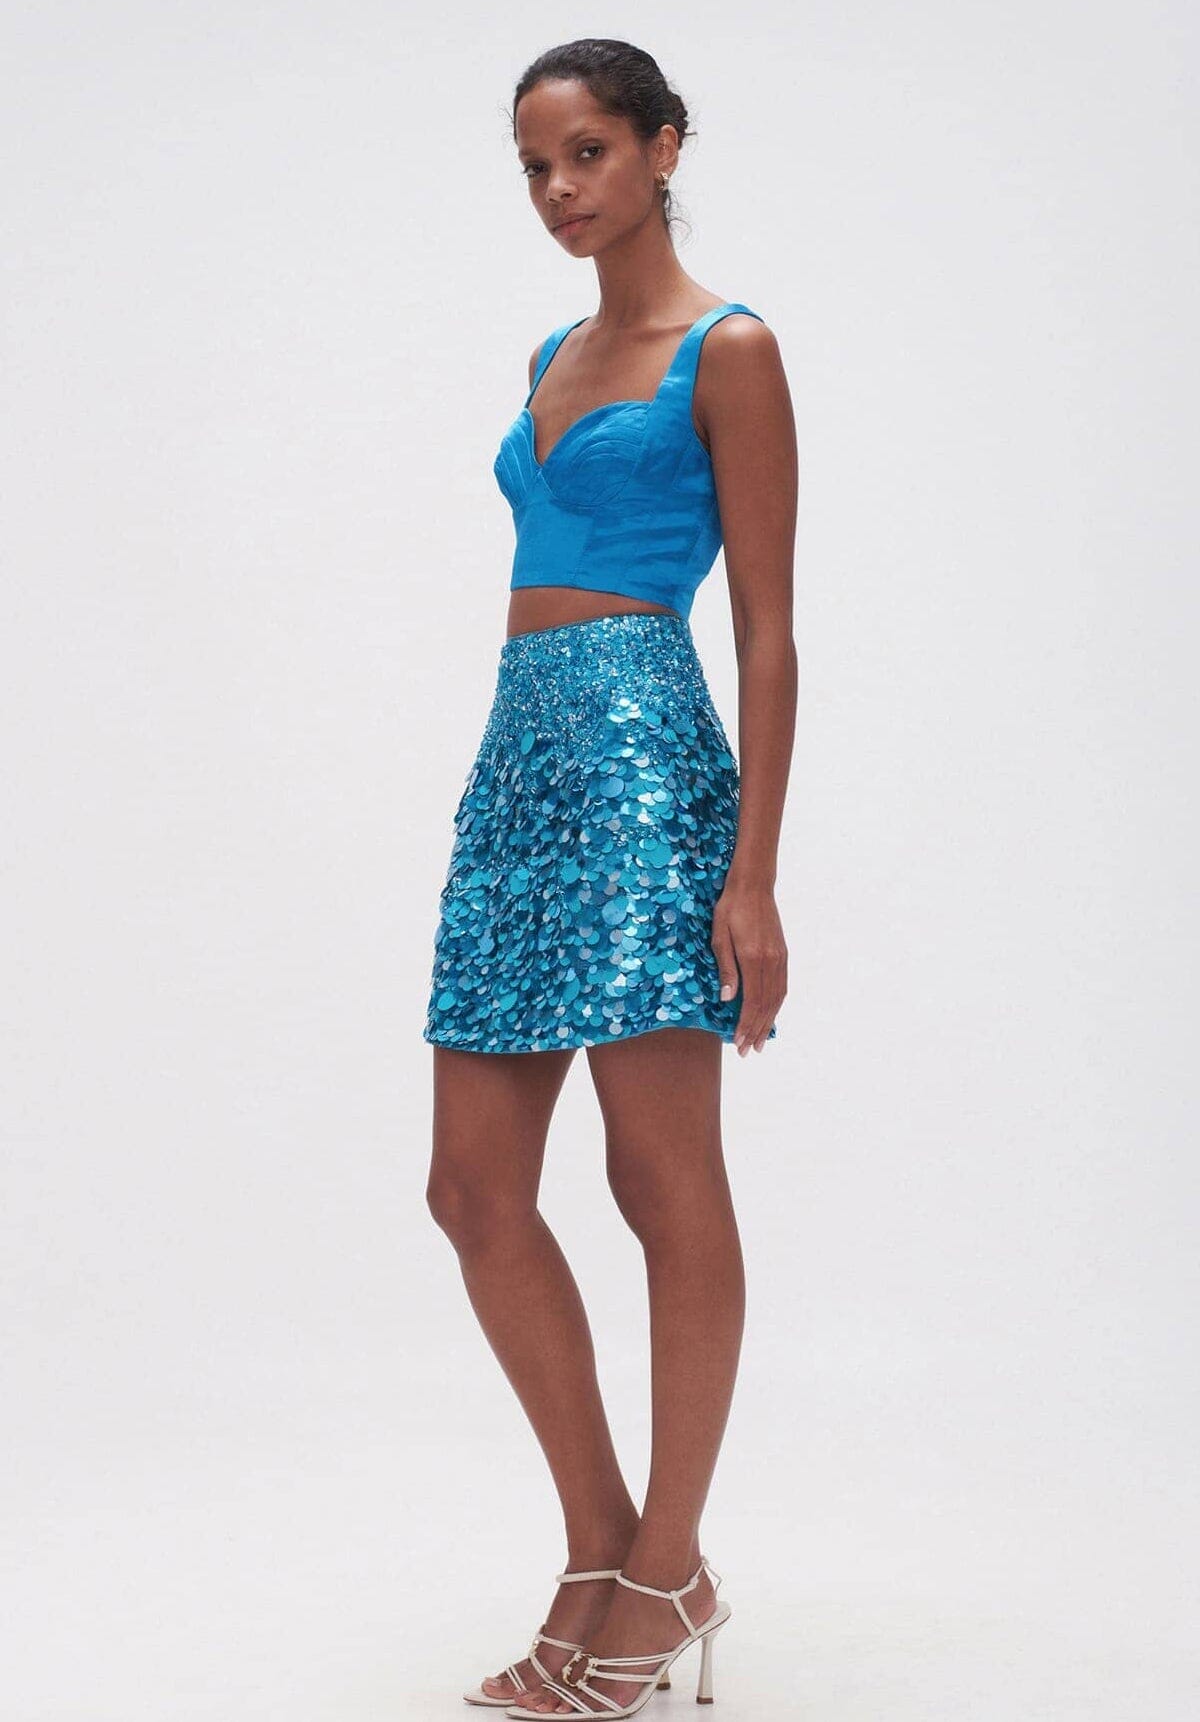 SELL Cherie Sequin Mini Skirt Azure - Blue Gift Card Ex Rentals 